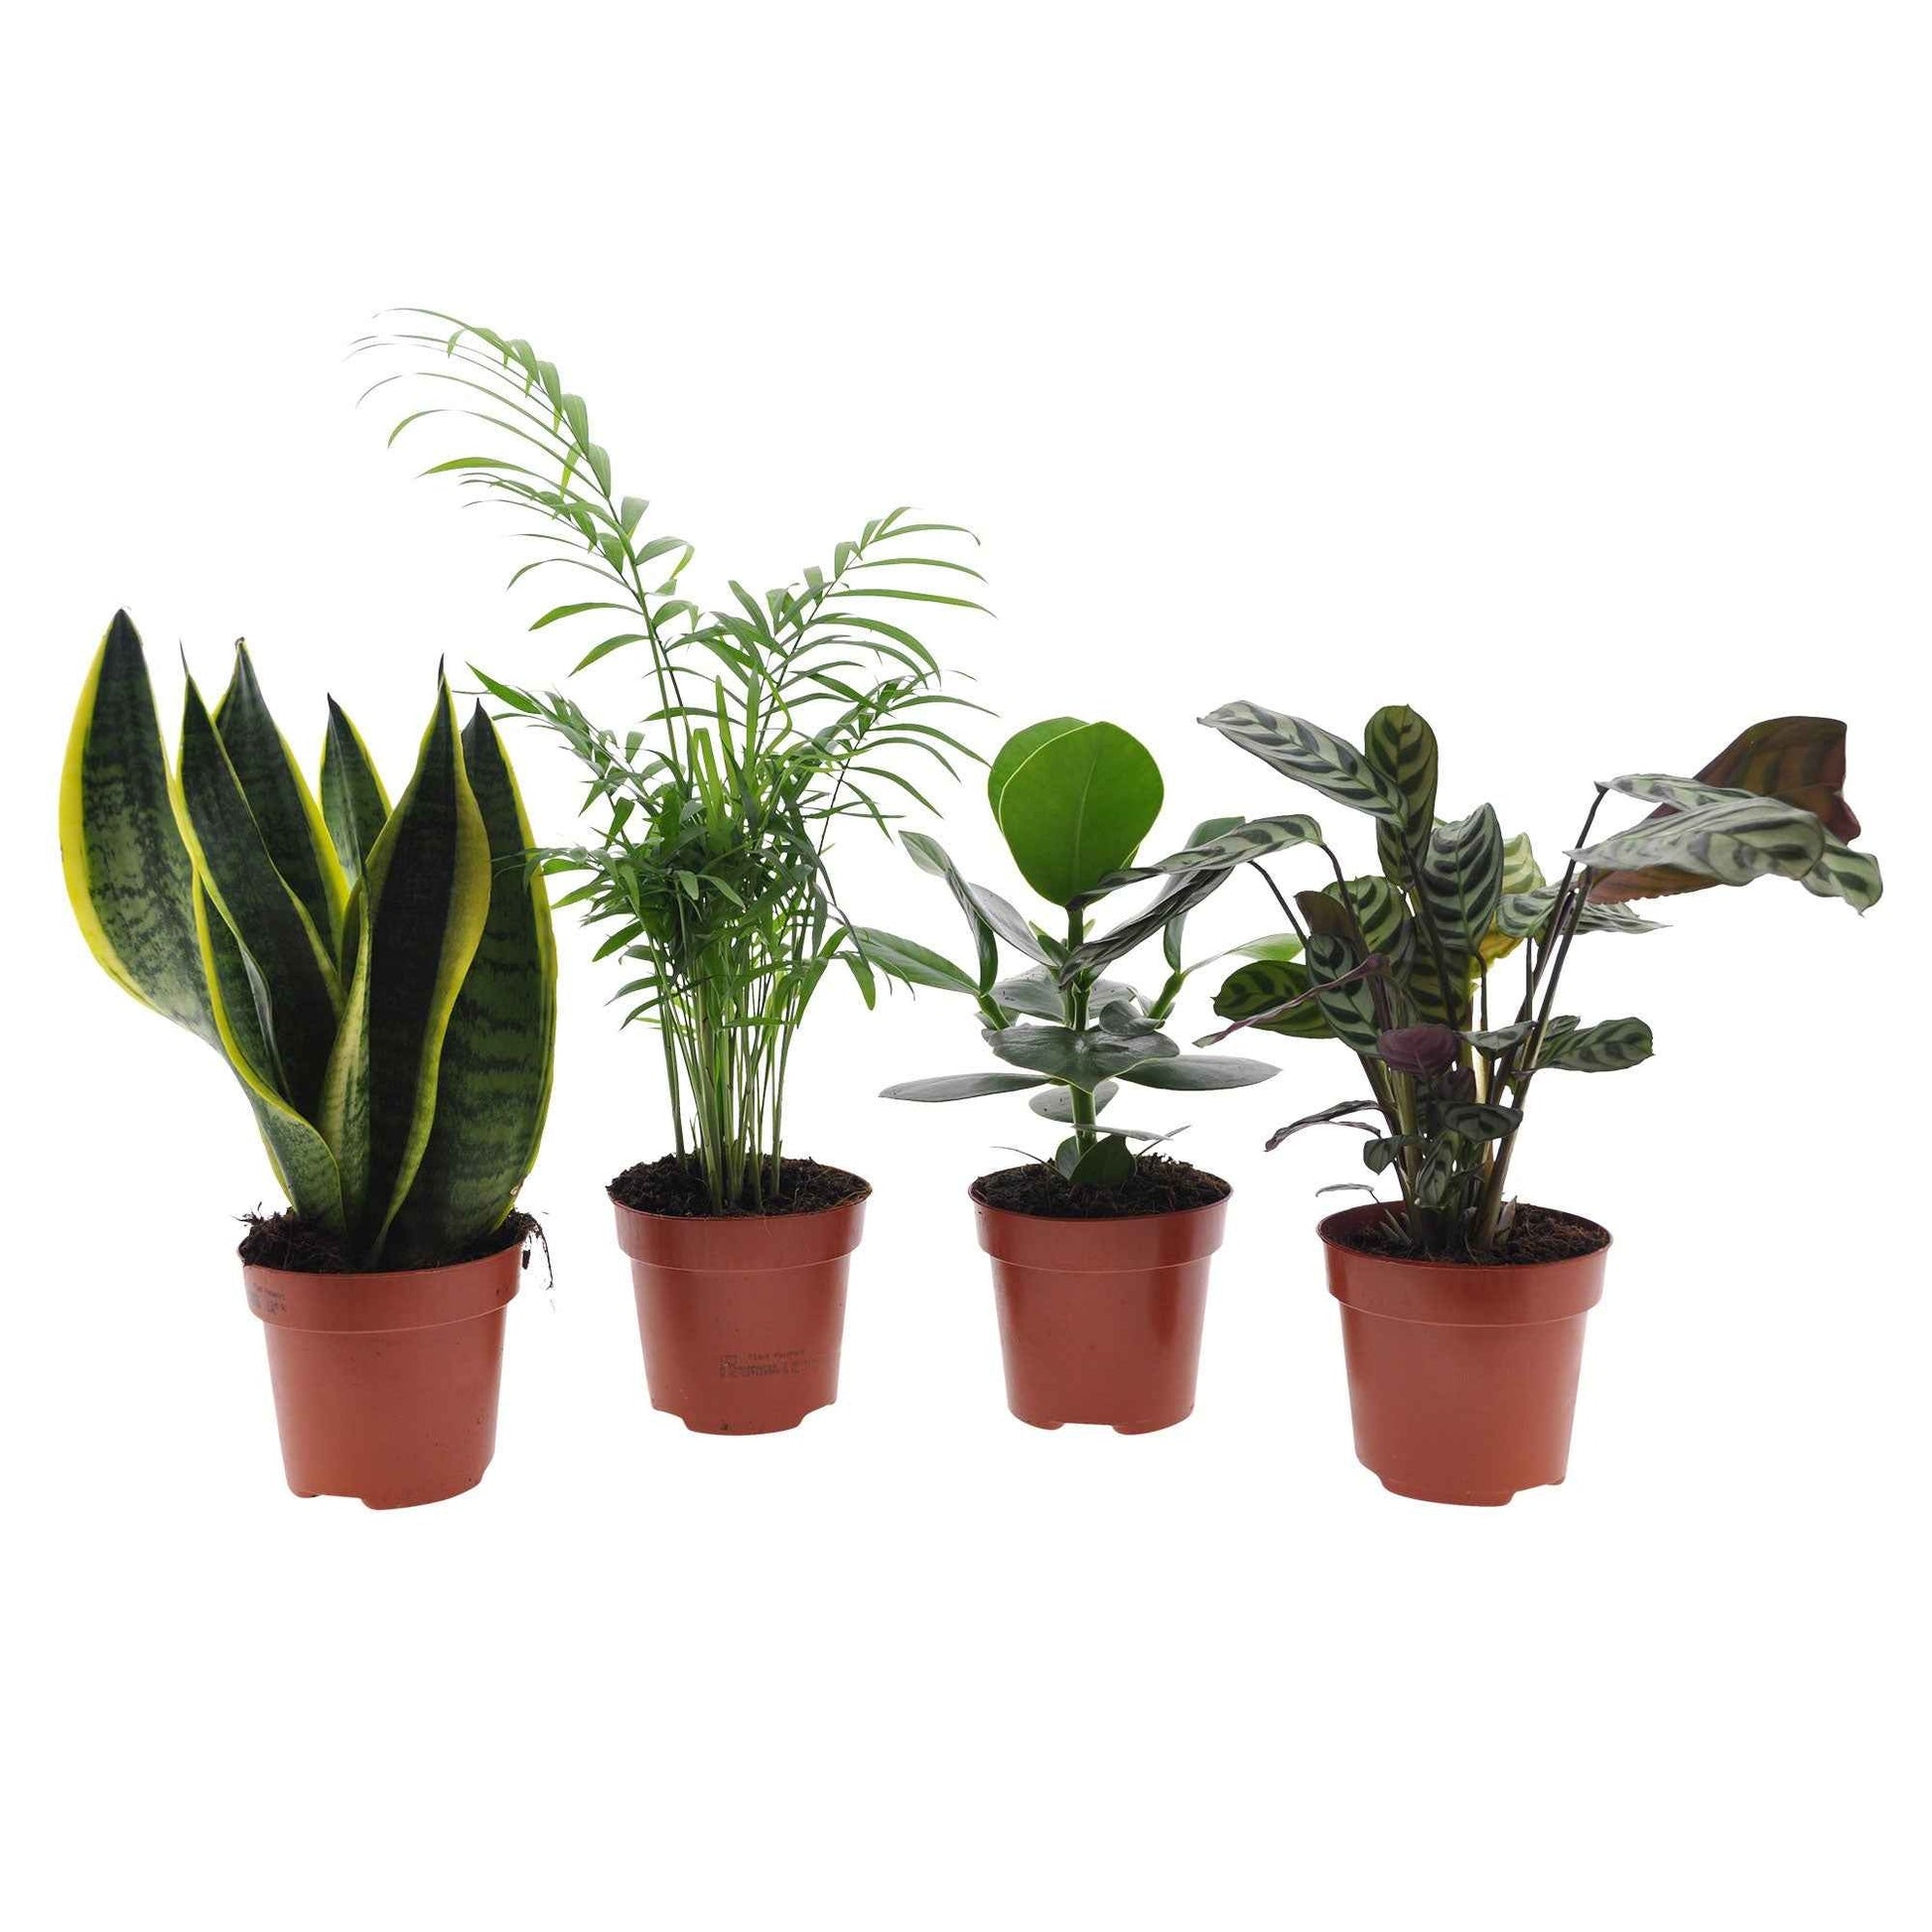 Acheter des plantes d'intérieur faciles à entretenir en hydroponie ?